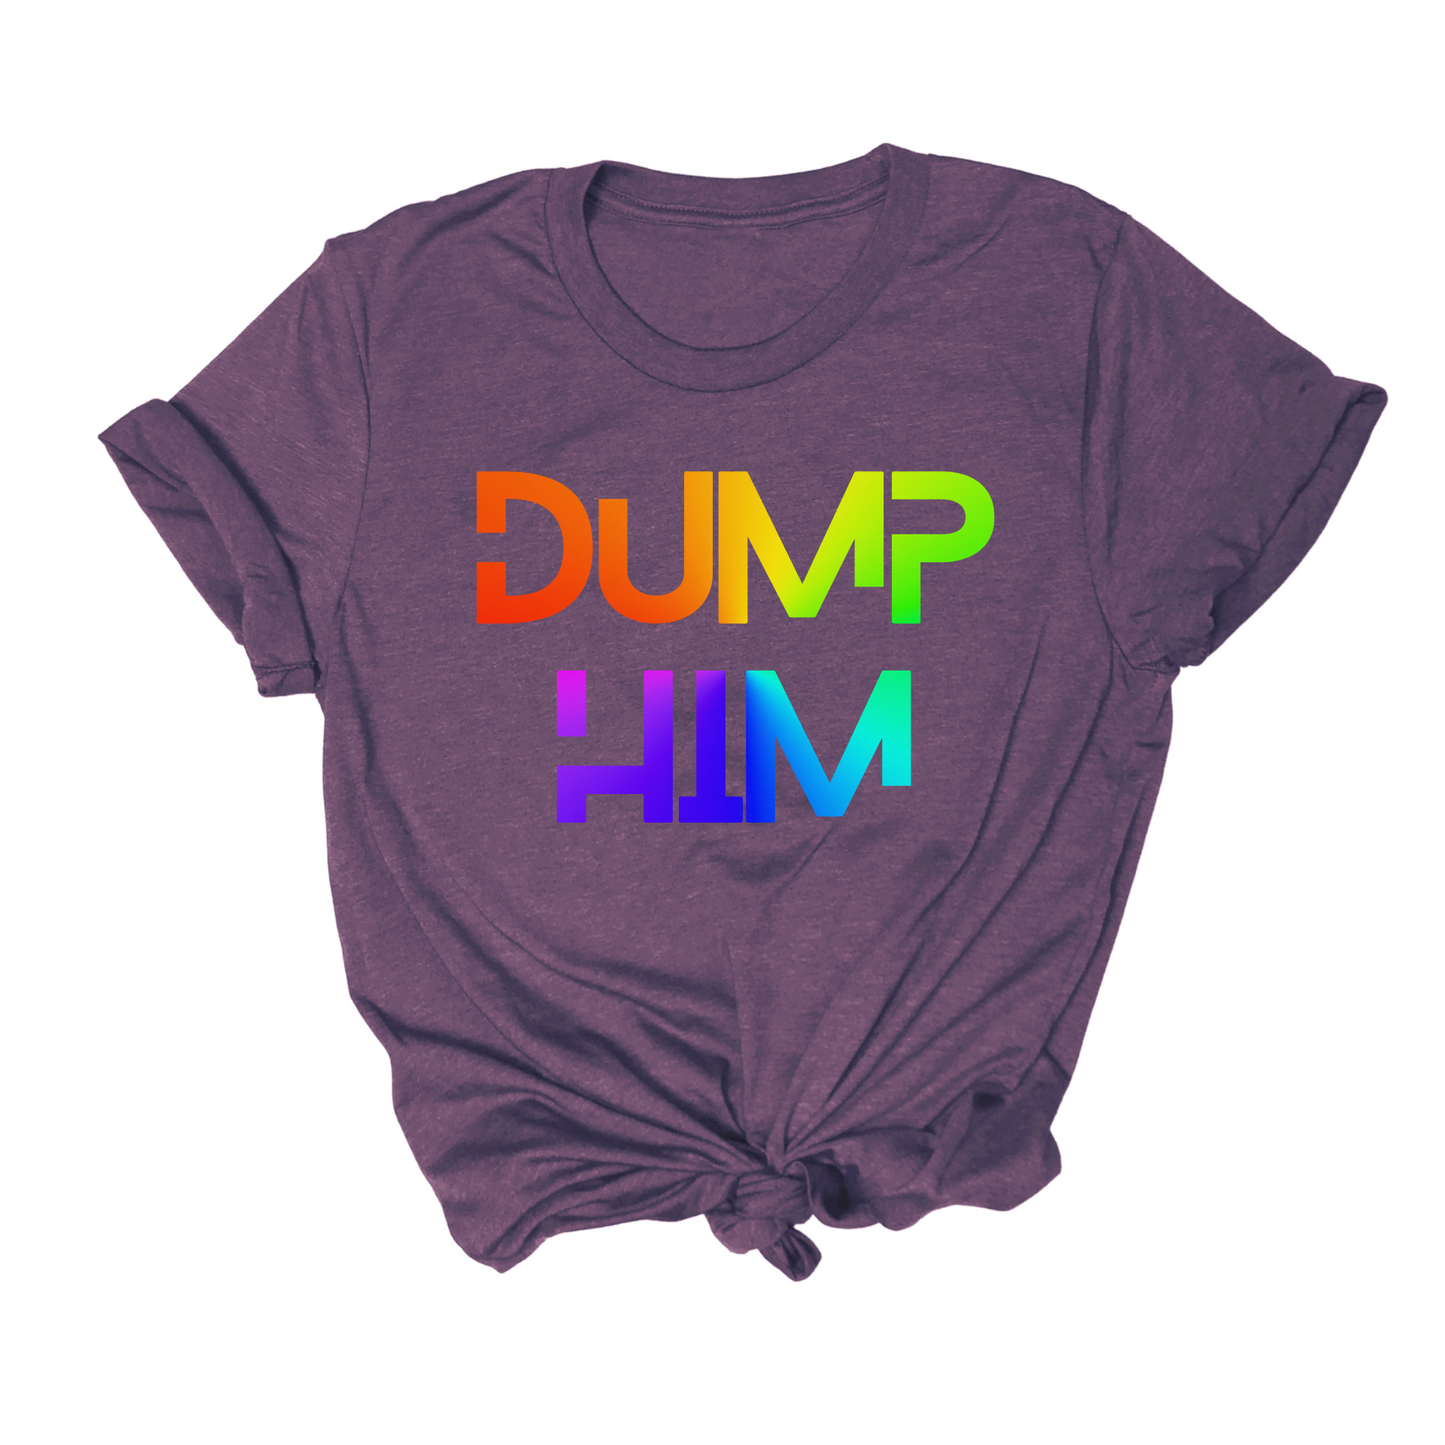 feminism t shirt that says "dump him"